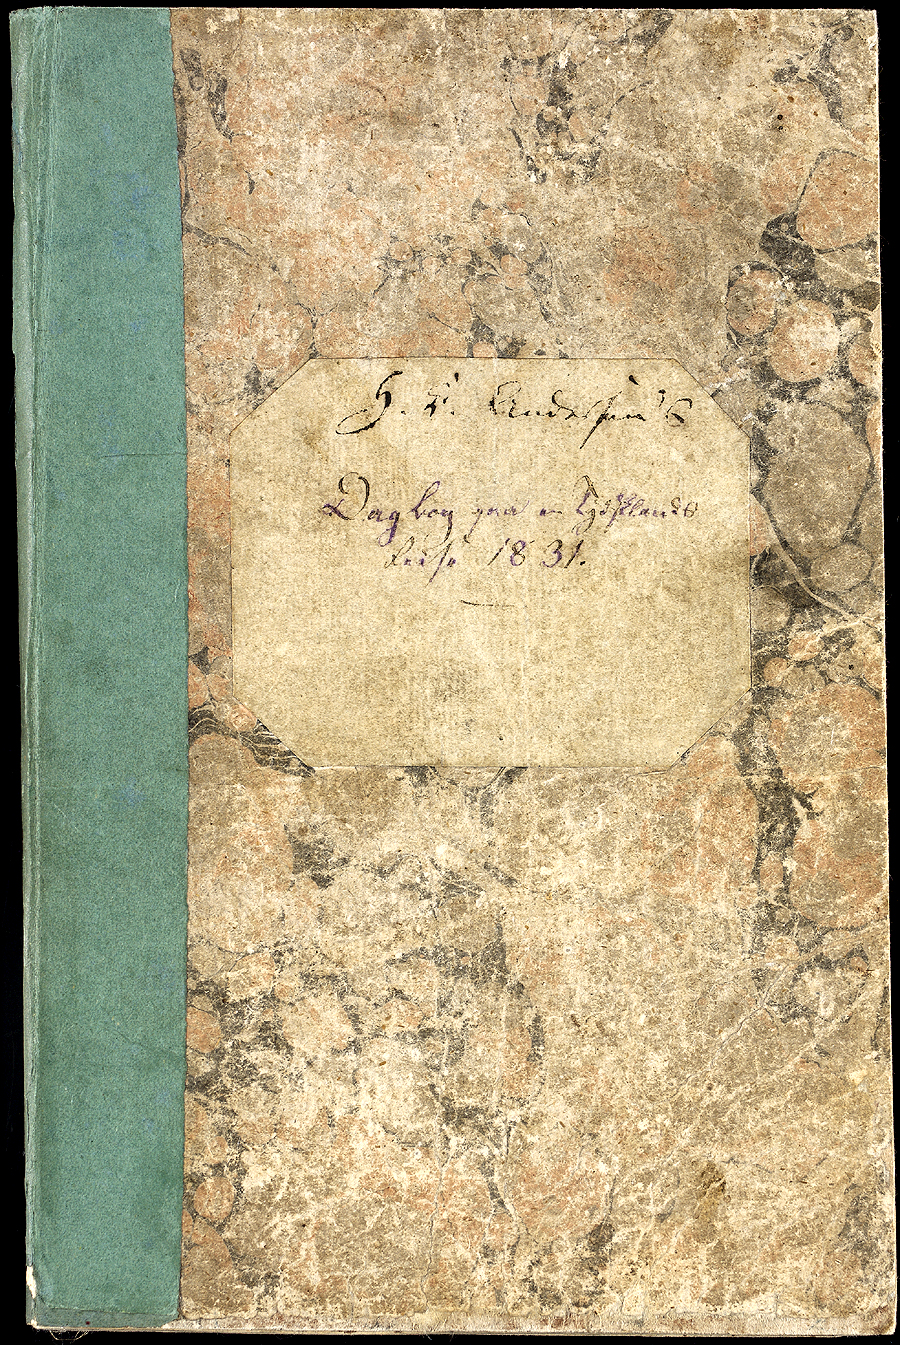 안데르센 원고 및 서신

안데르센(1805-1875)은「인어공주」,「미운 오리새끼」등을 쓴 세계적 아동문학 작가이다. 이 기록물은 안데르센의 원고와 서신 필사본으로 당대 문학사 연구에 귀중한 자료로 활용되고 있다. 덴마크 왕립도서관은 여러 곳에 흩어져 있던 기록물을 수집ㆍ보존하고 있다.